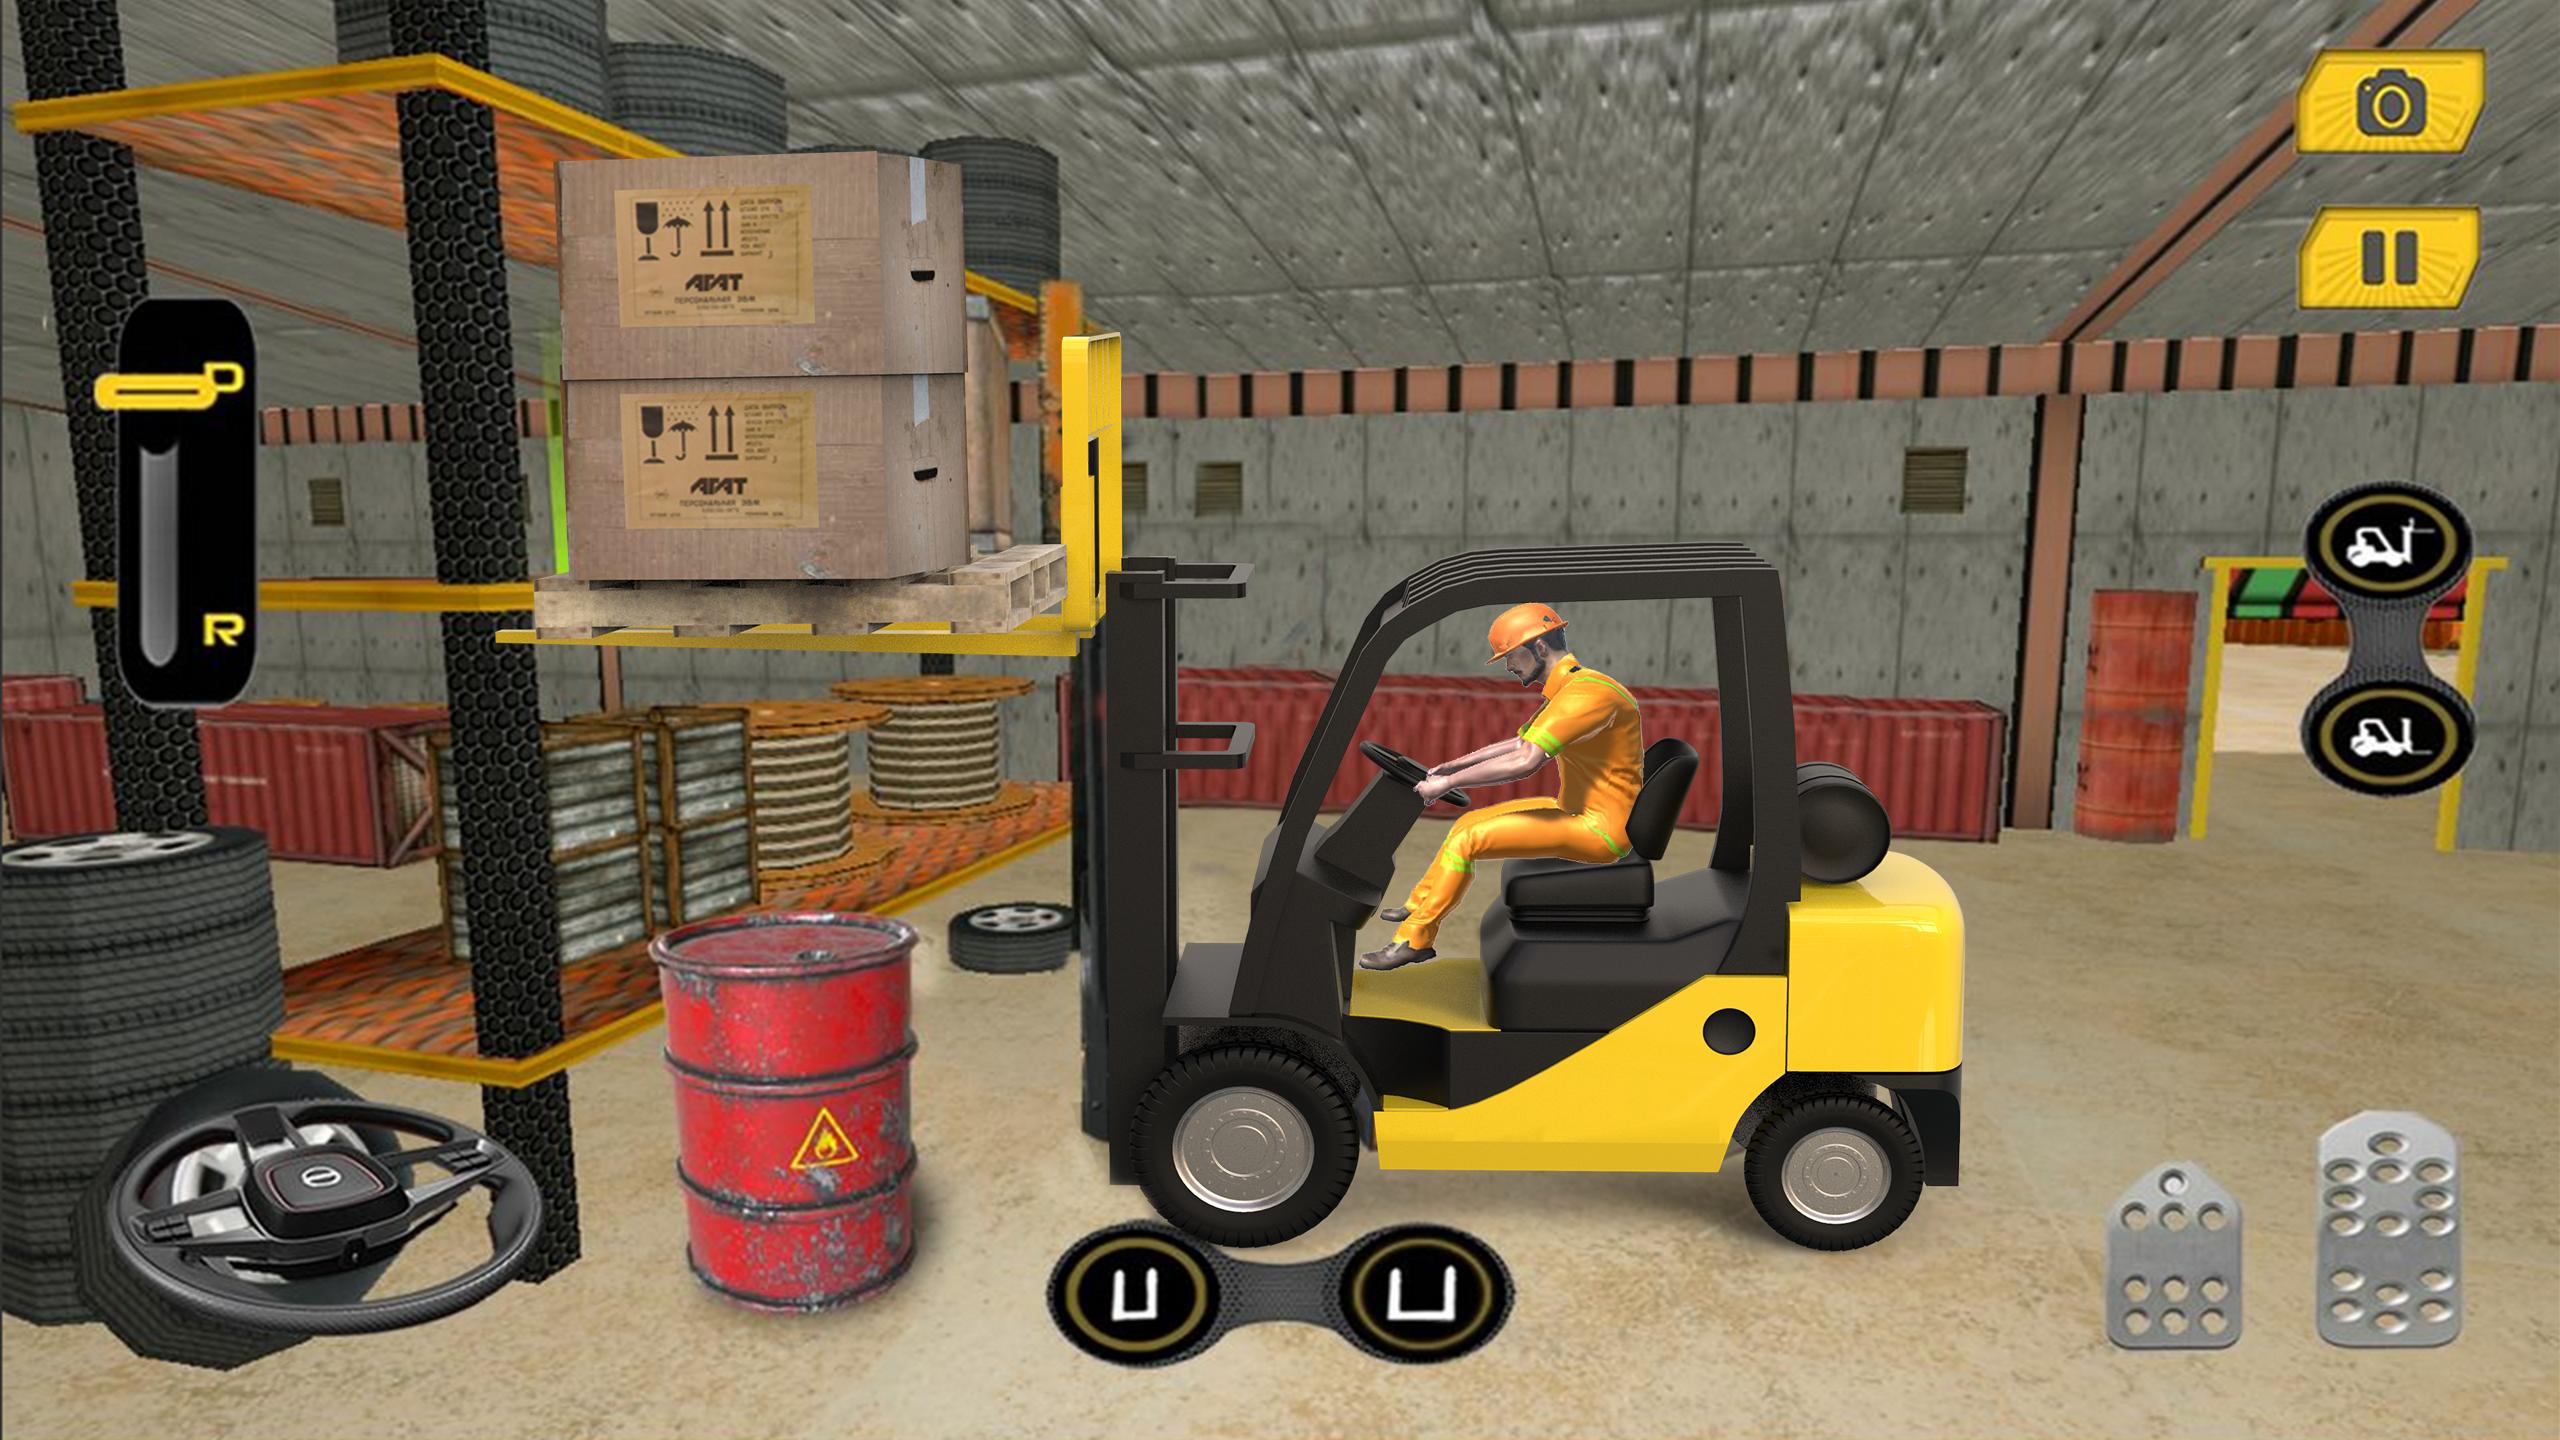 Real Forklift Simulator 2019: Cargo Forklift Games 3.1 Screenshot 9